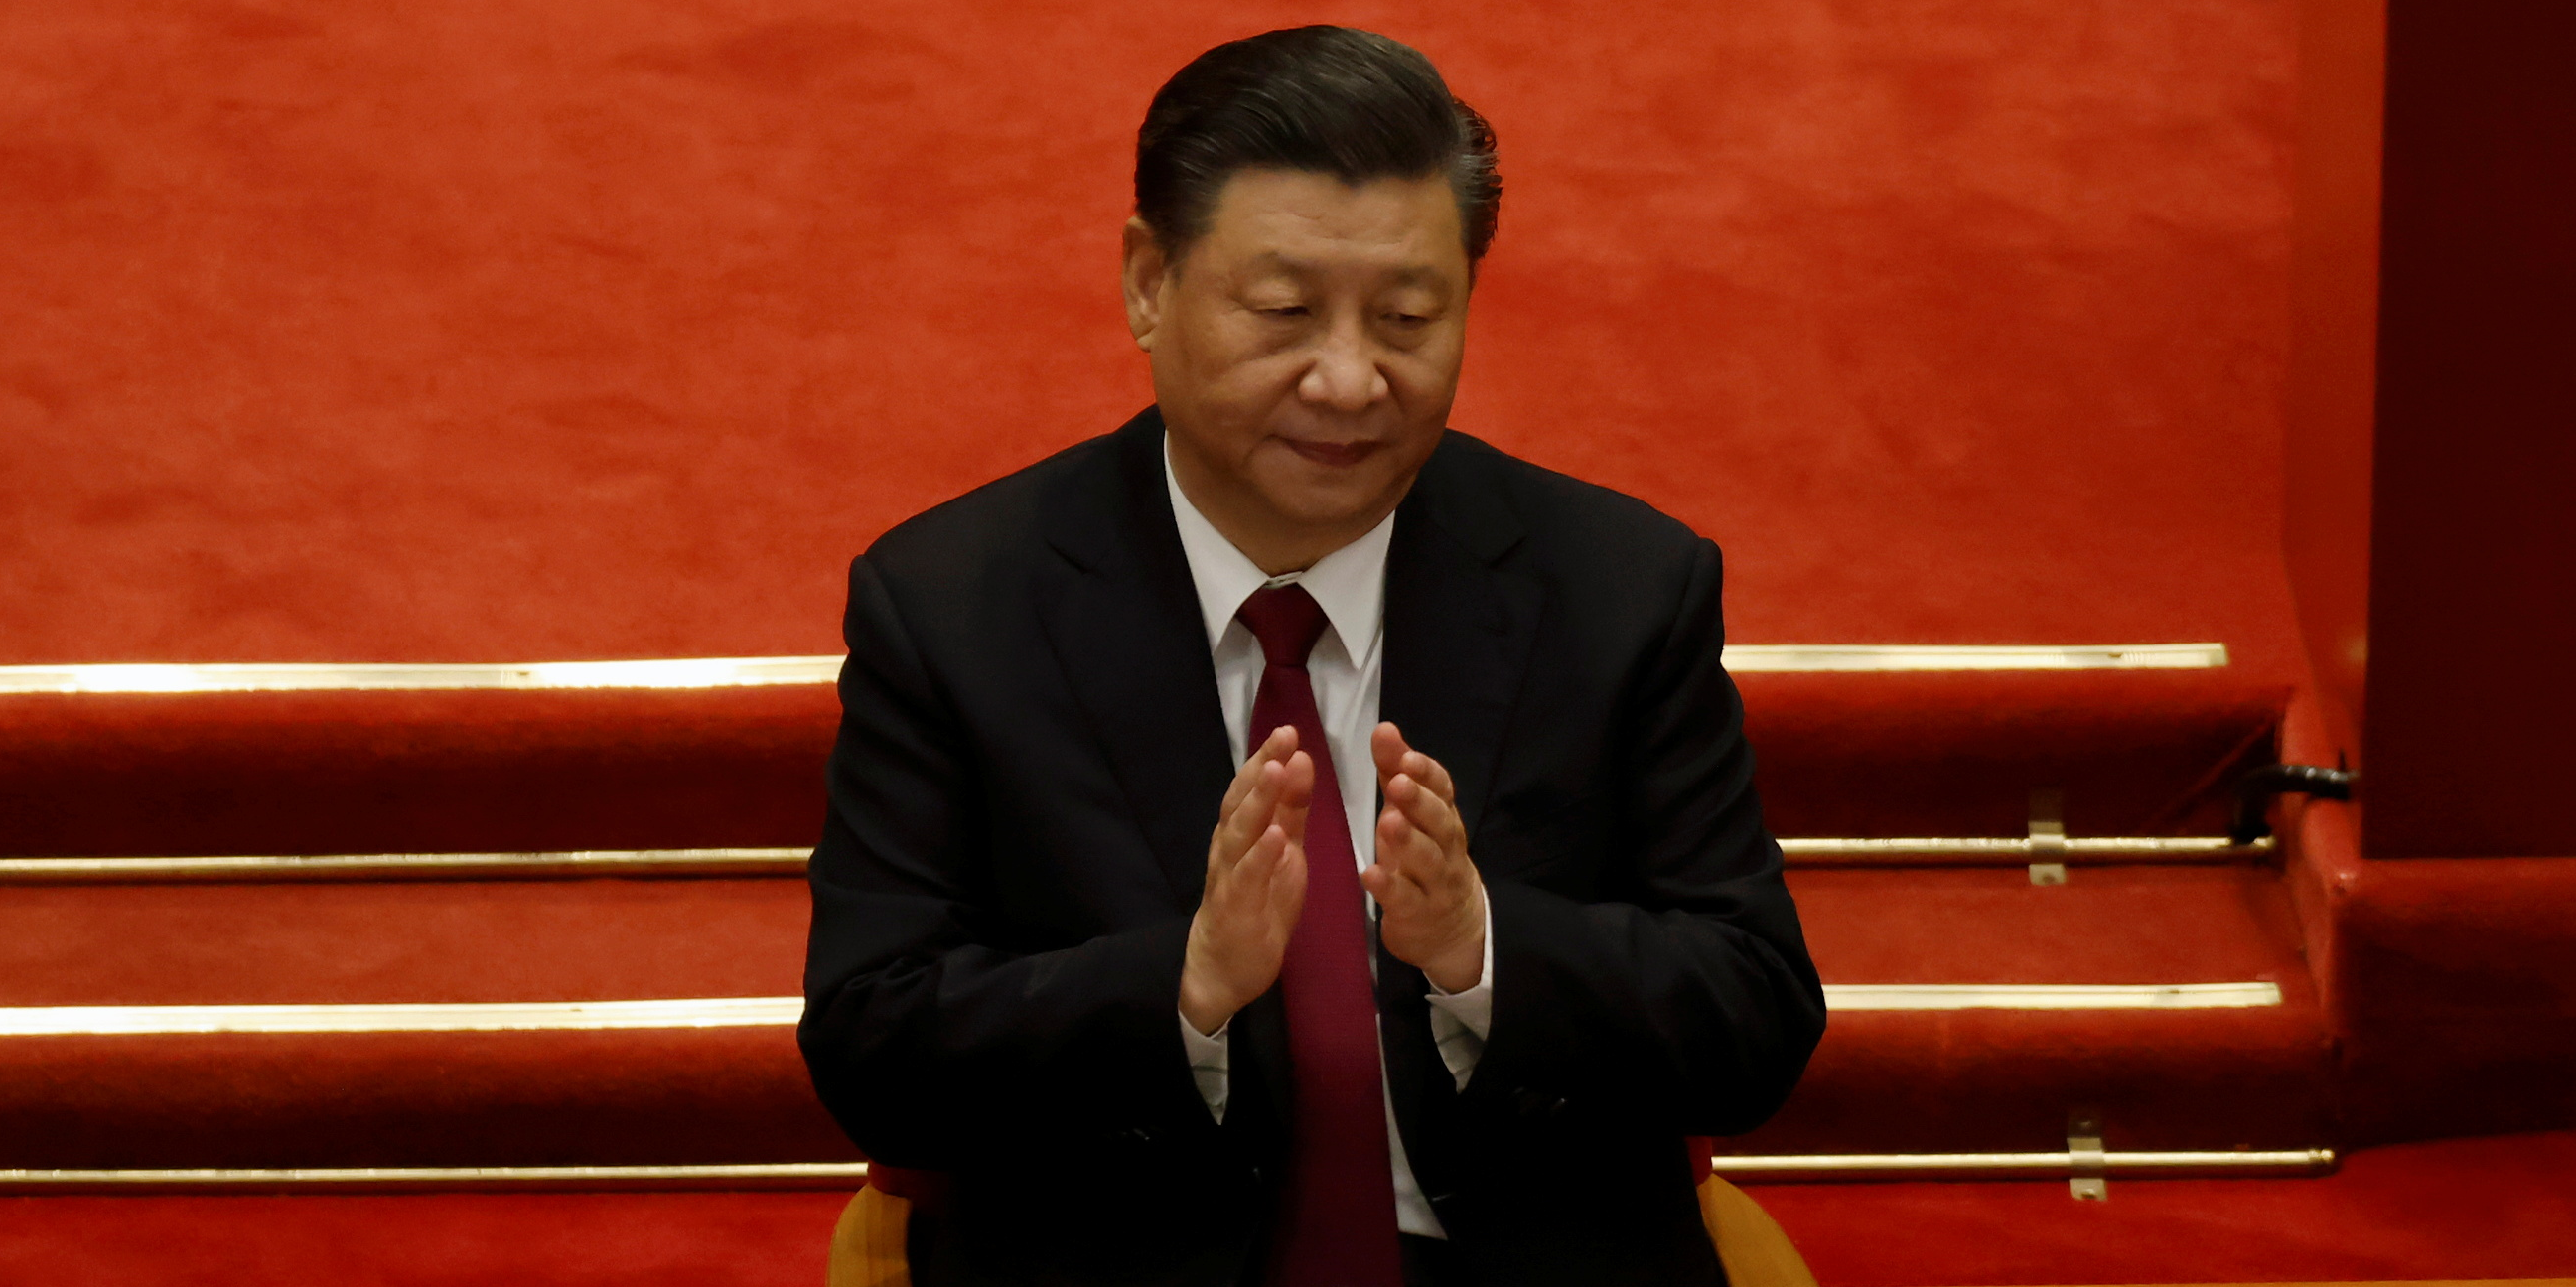 La Chine, ou le paradigme du national capitalisme autoritaire